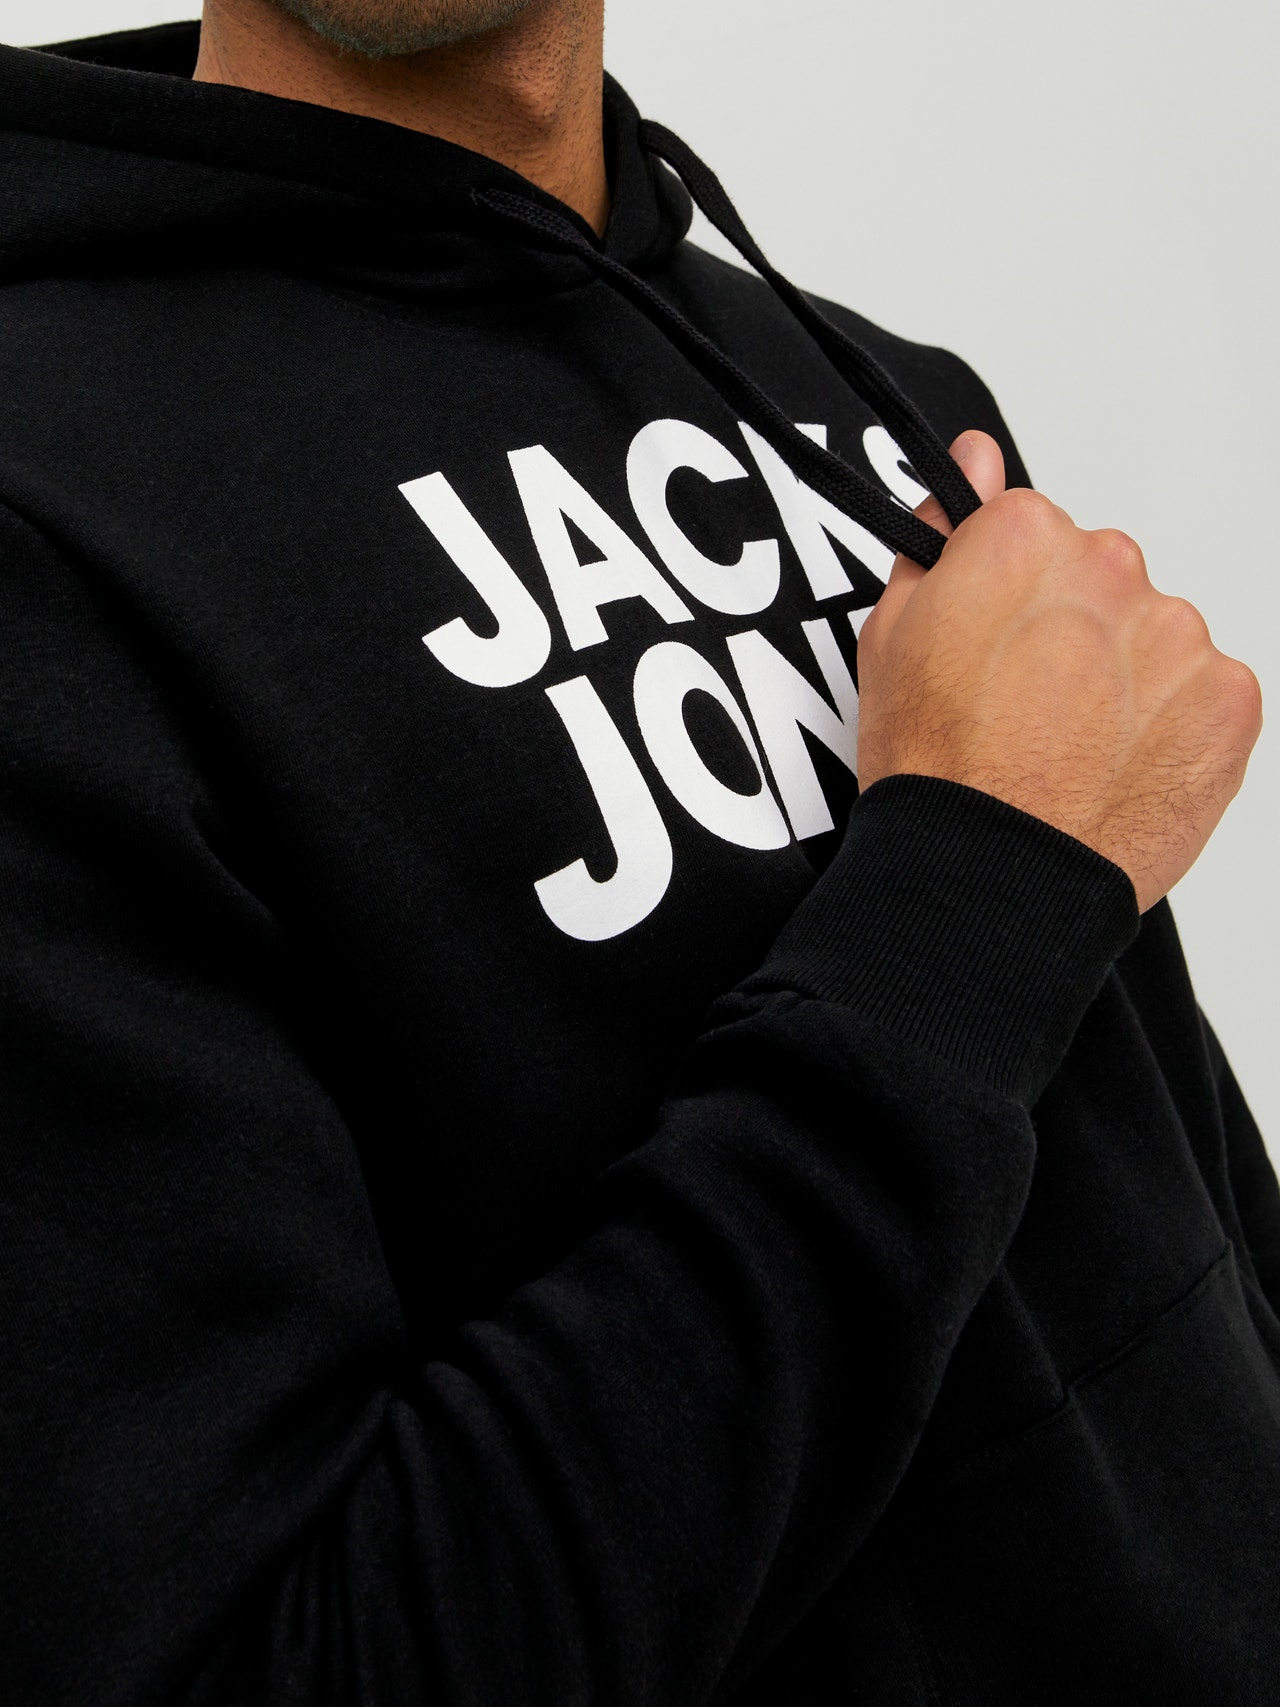 Jack & Jones Logo Kapuutsiga pusa -Black - 12152840